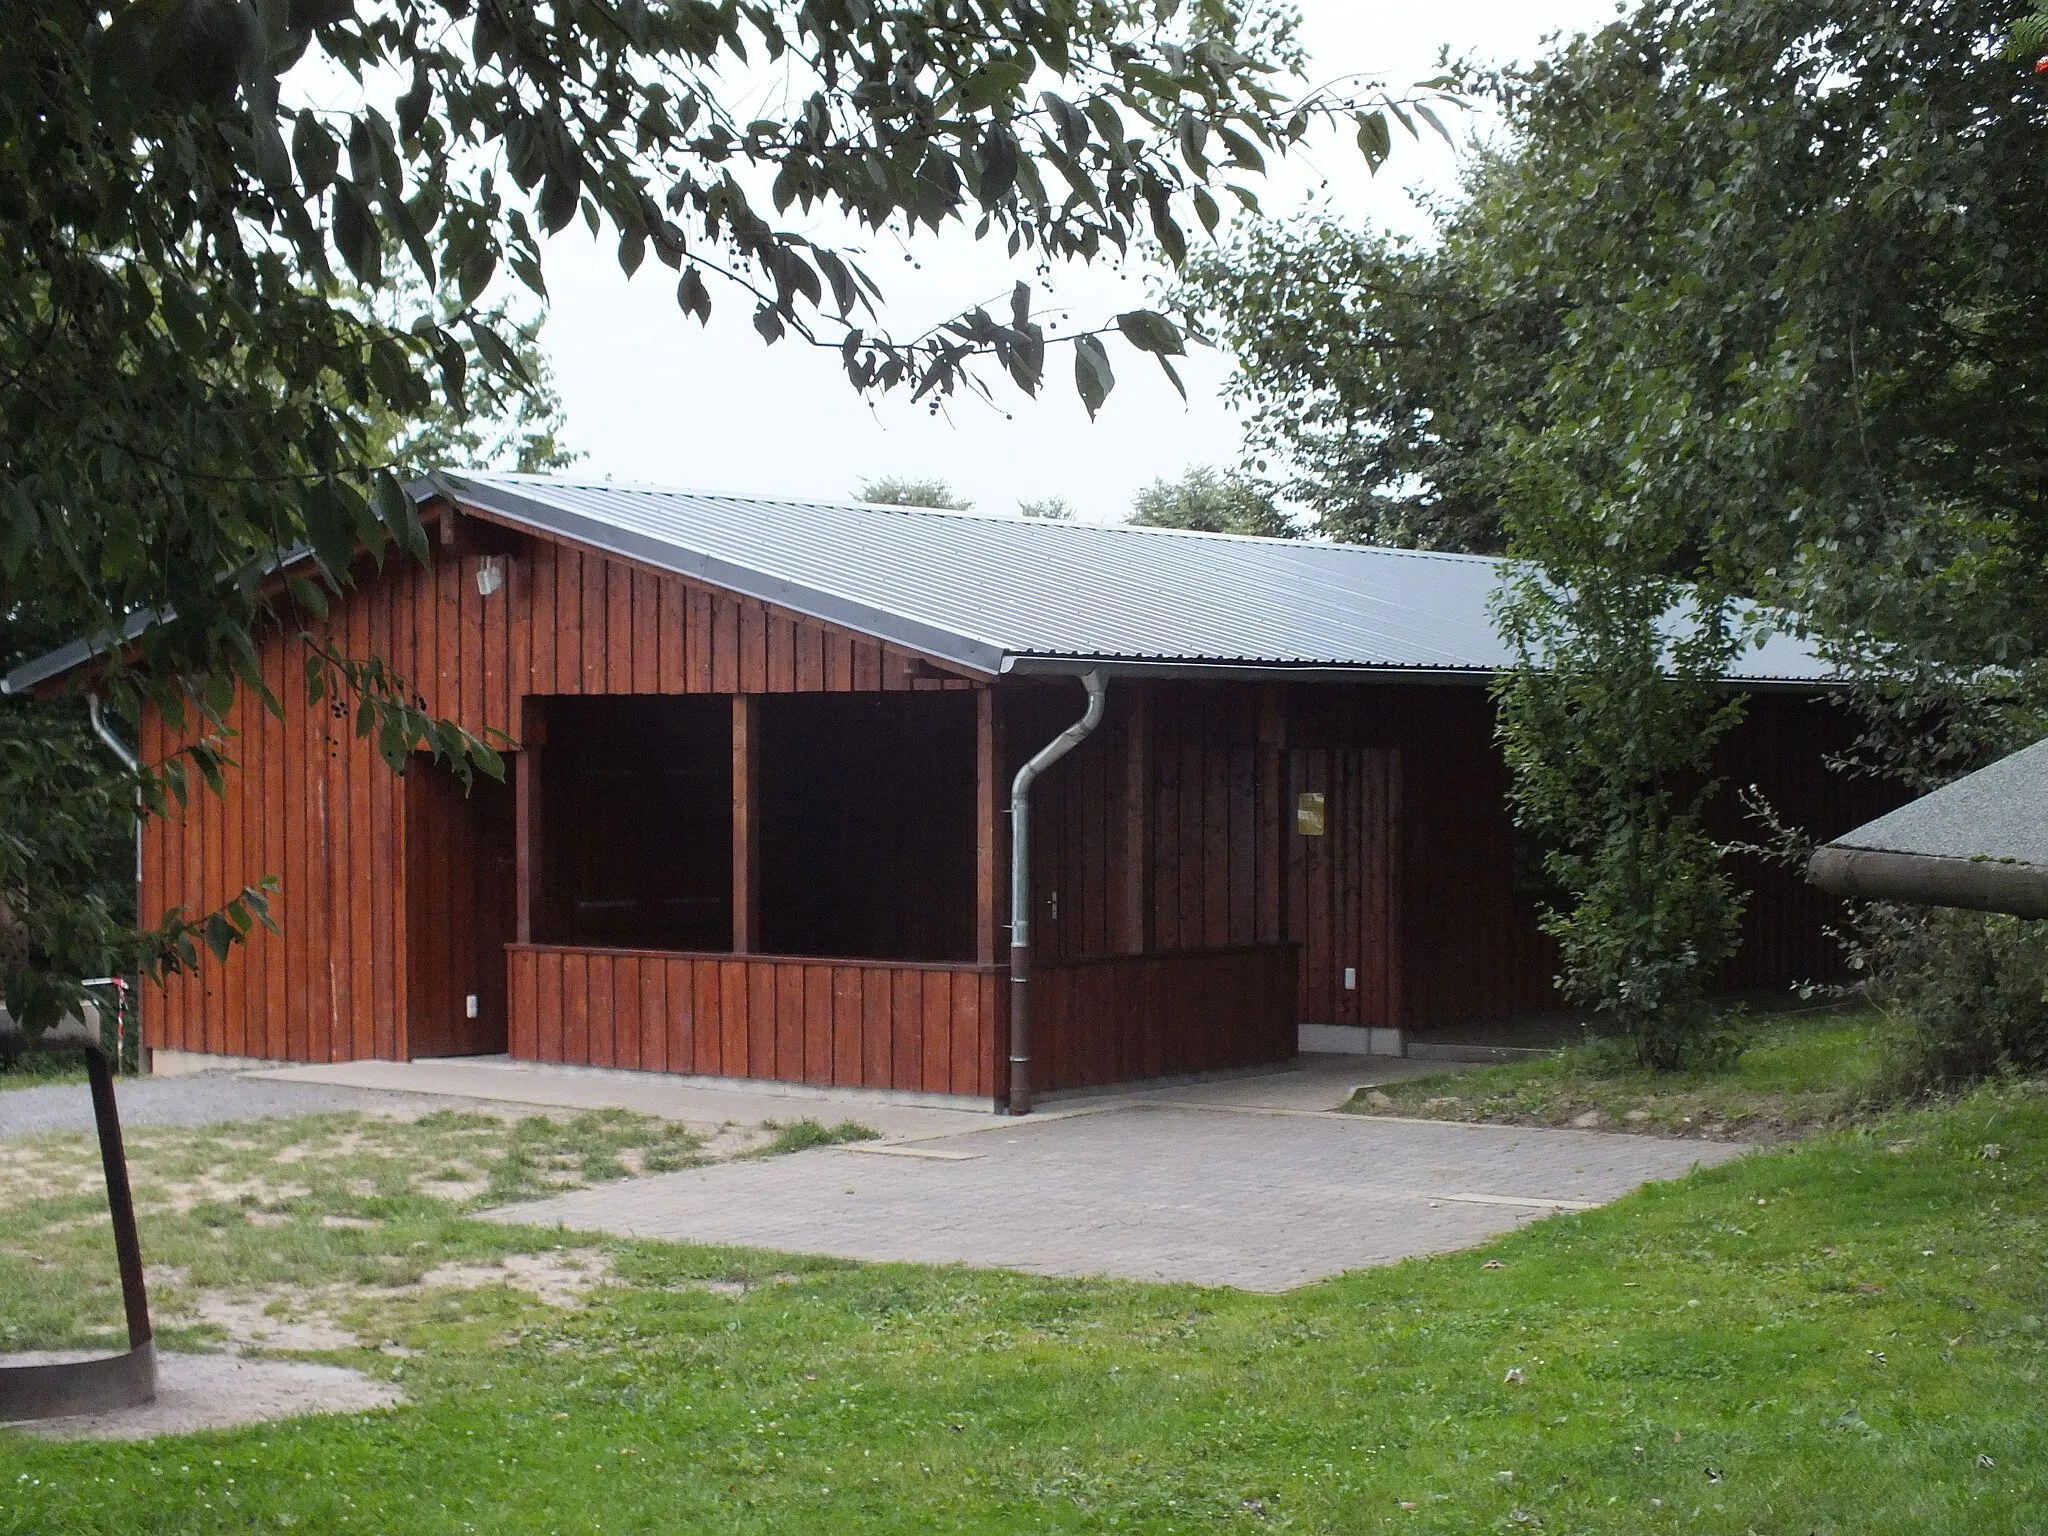 Photo showing: Die 2009 neu aufgebaute Grillhütte am Martinsweiher in Schauenburg-Martinhagen.